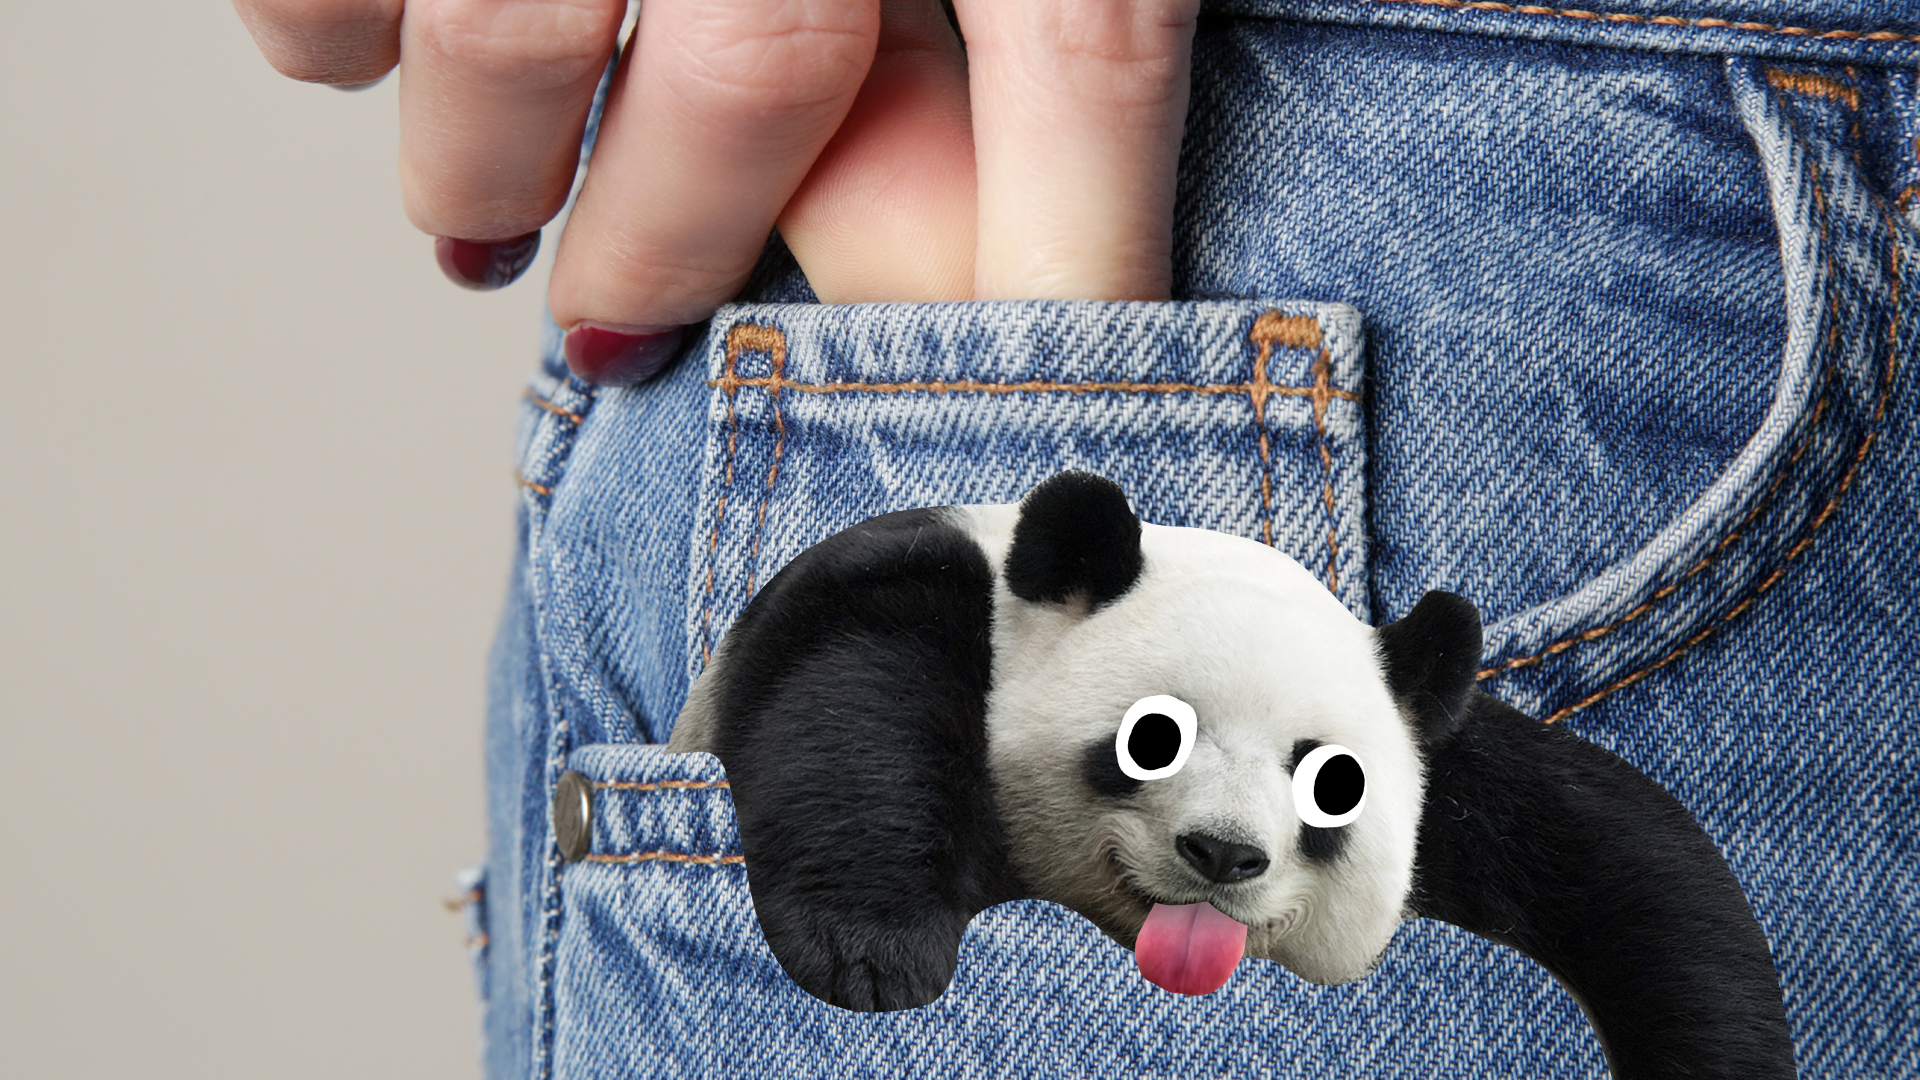 Derpy panda in someone's pocket